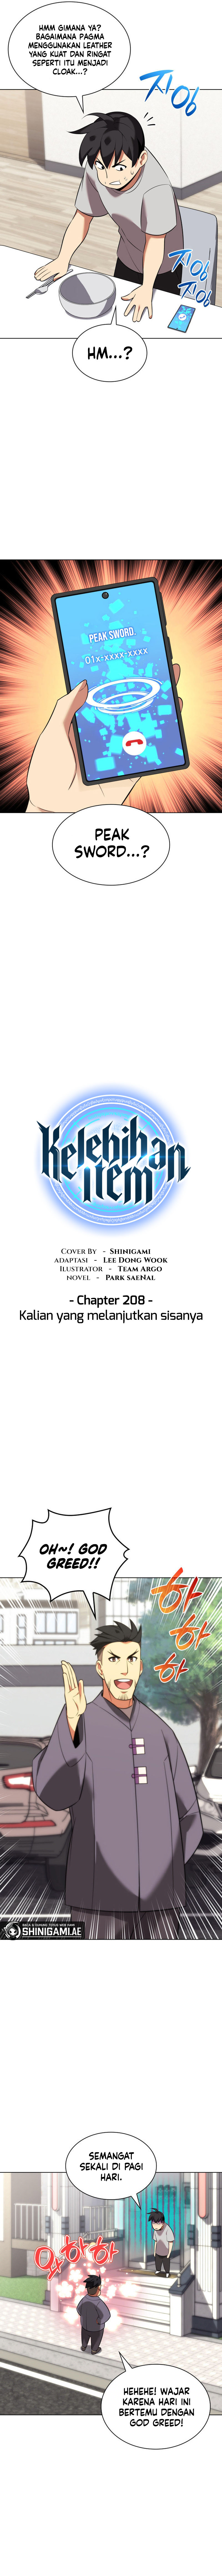 kang-item Chapter 208